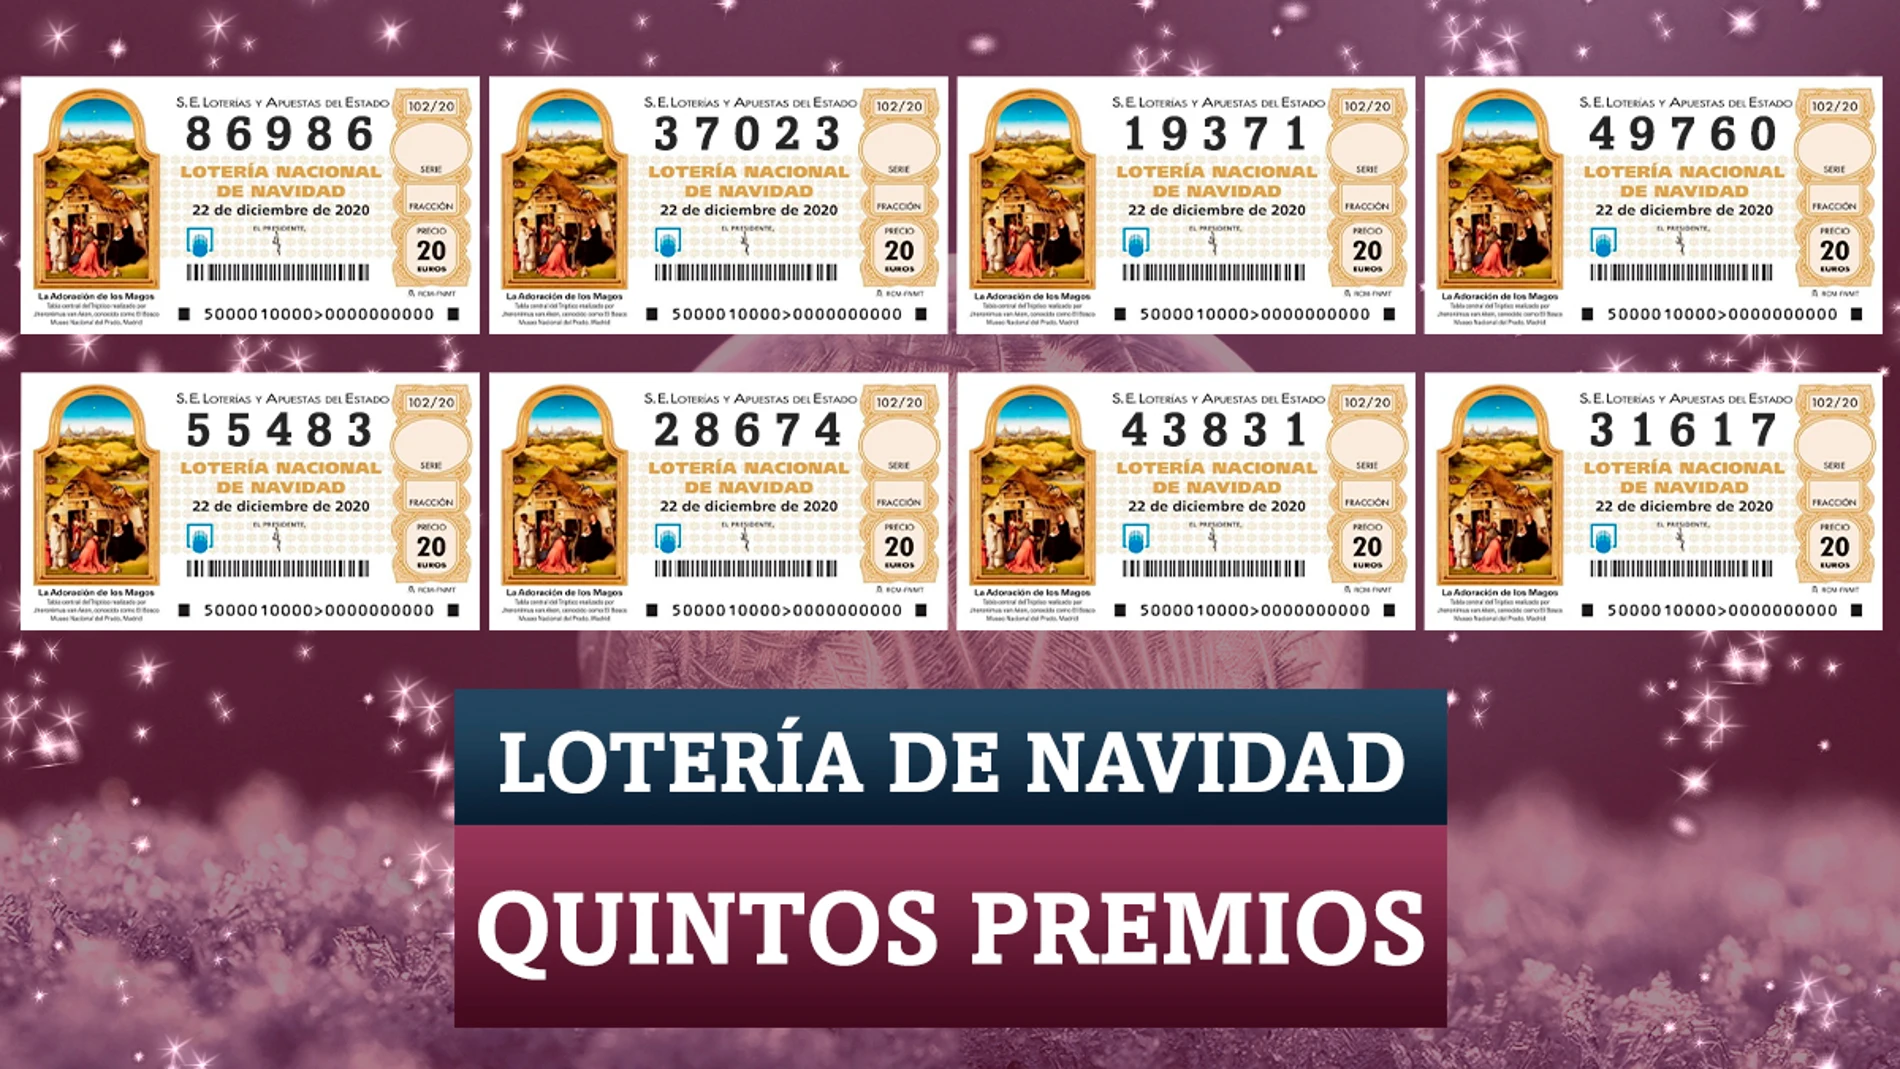 Quintos premios de la Lotería de Navidad 2020